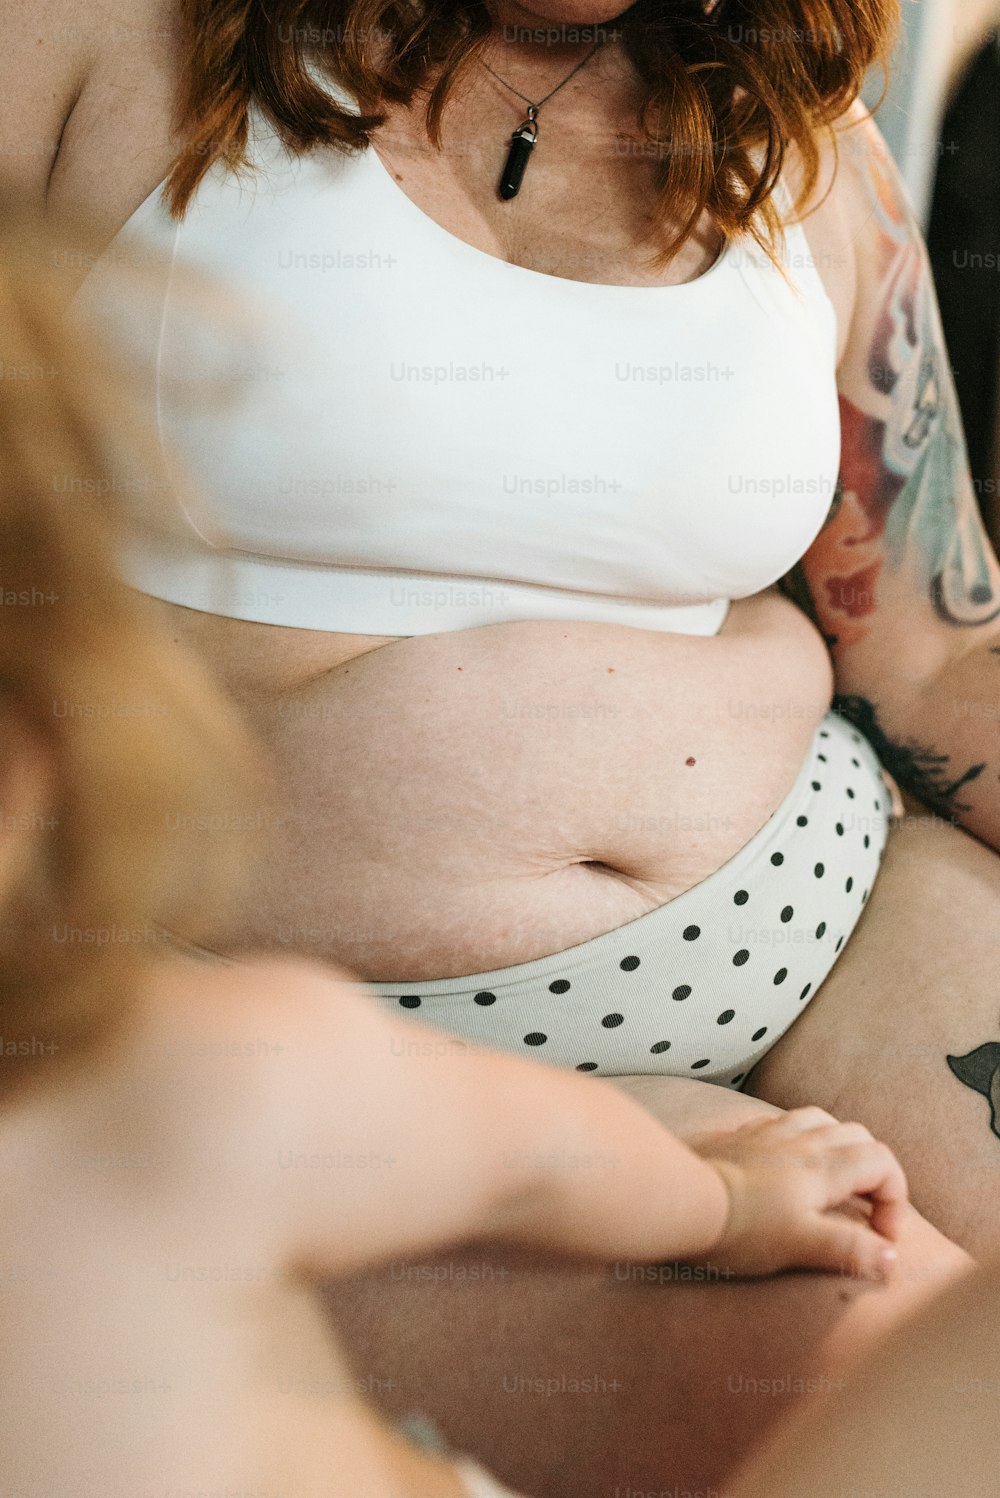 uma mulher grávida com tatuagens no estômago